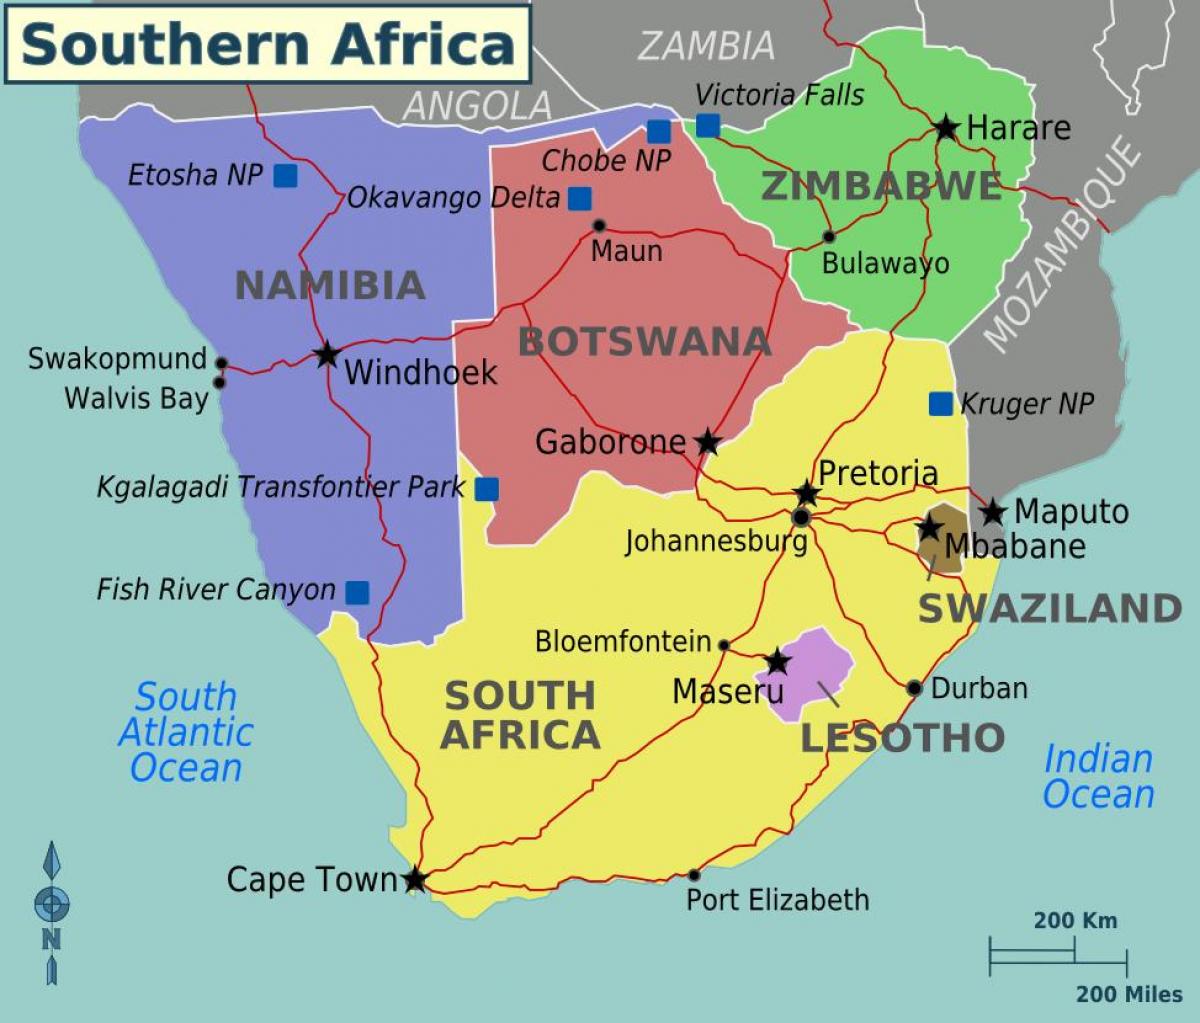 دول جنوب أفريقية تخطط لتوسيع نطاق التأشيرة السياحية فيما بينها.